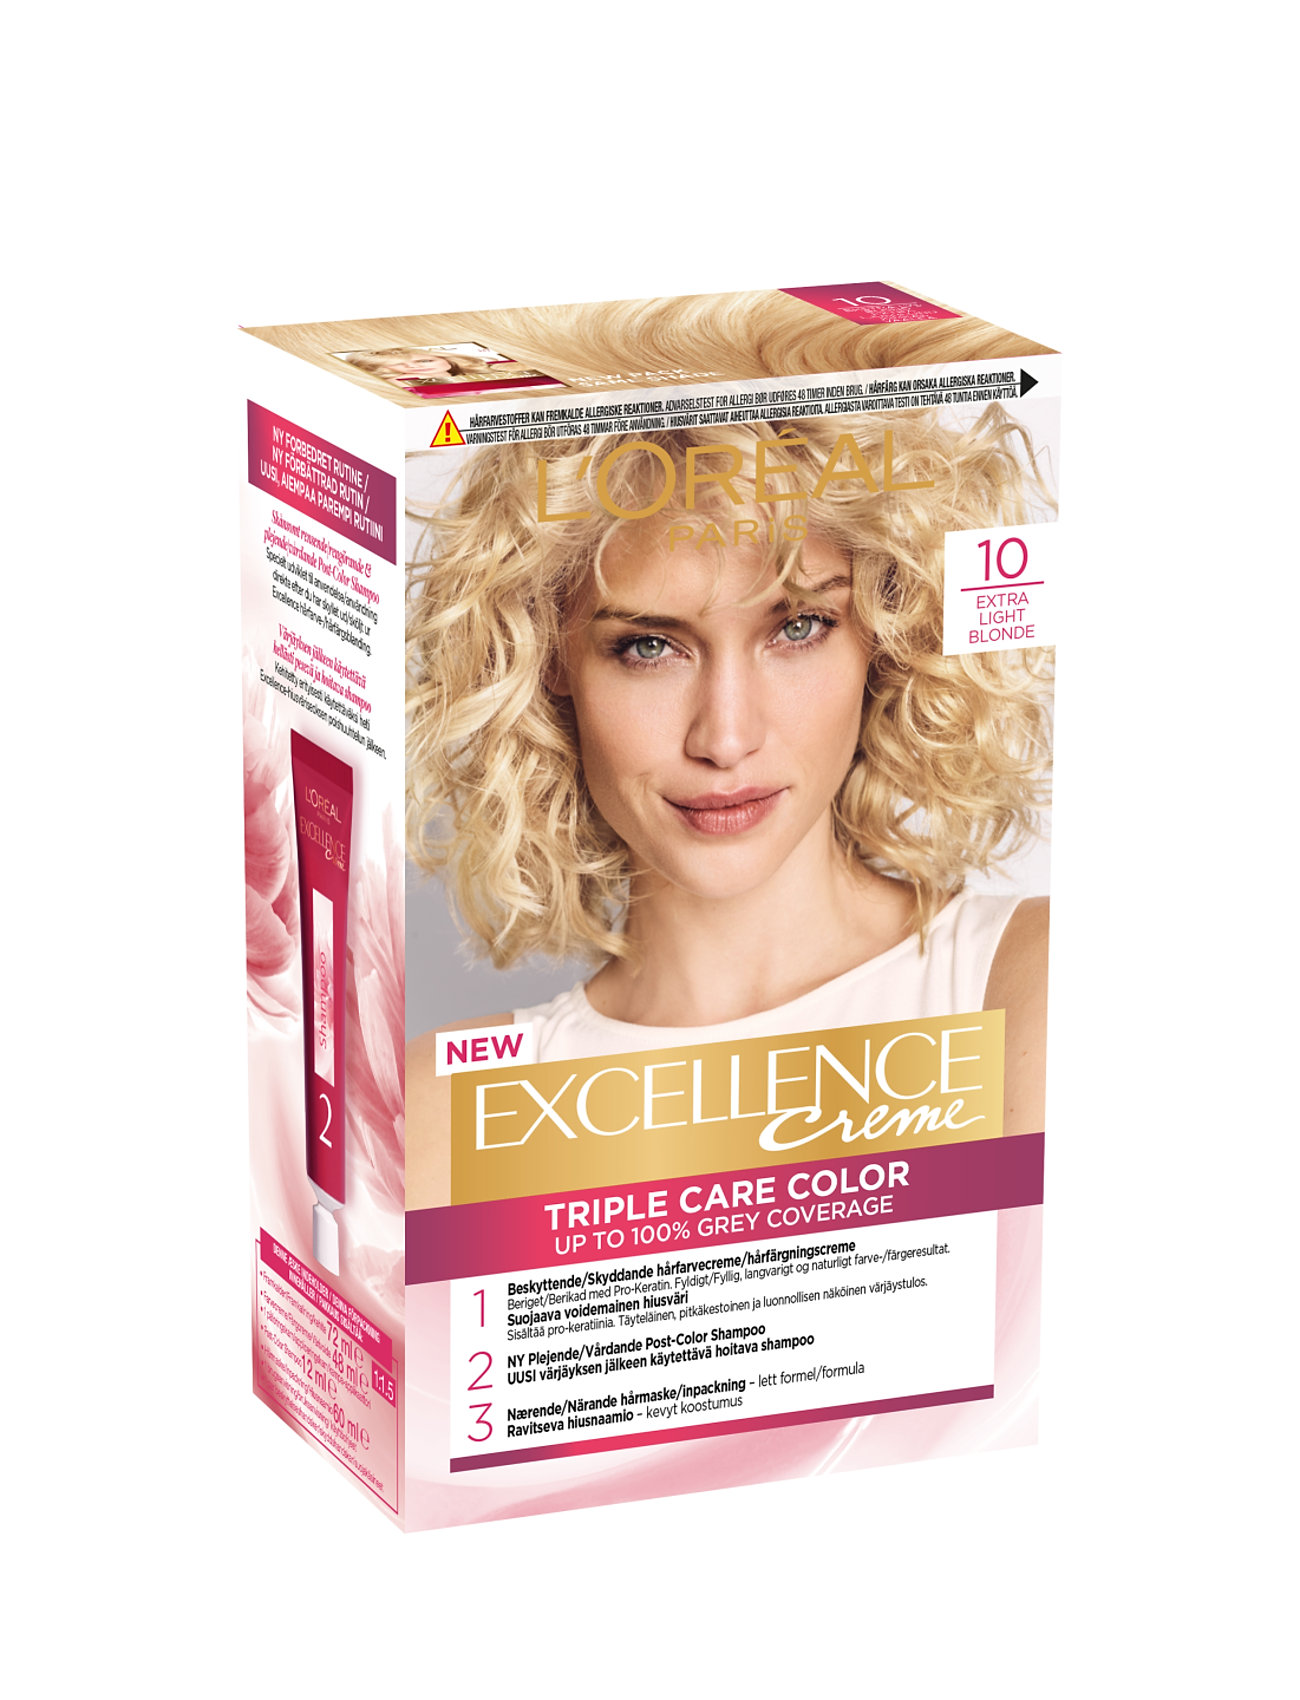 "L'Oréal Paris" "L'oréal Paris Excellence Color Cream Kit 10 Extra Light Blonde Beauty Women Hair Care Treatments Nude L'Oréal